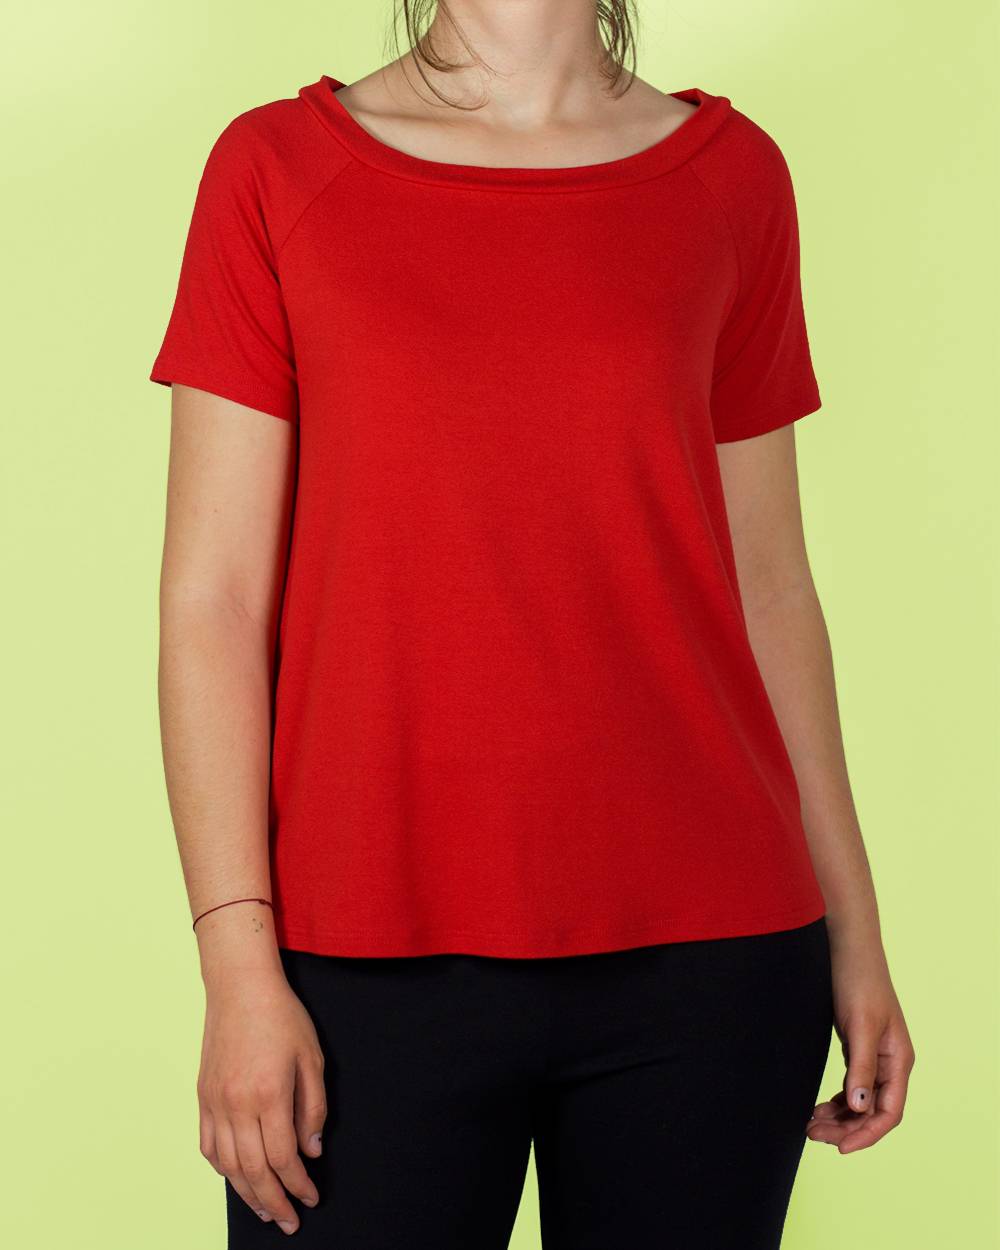 samarreta color vermell de màniga curta.